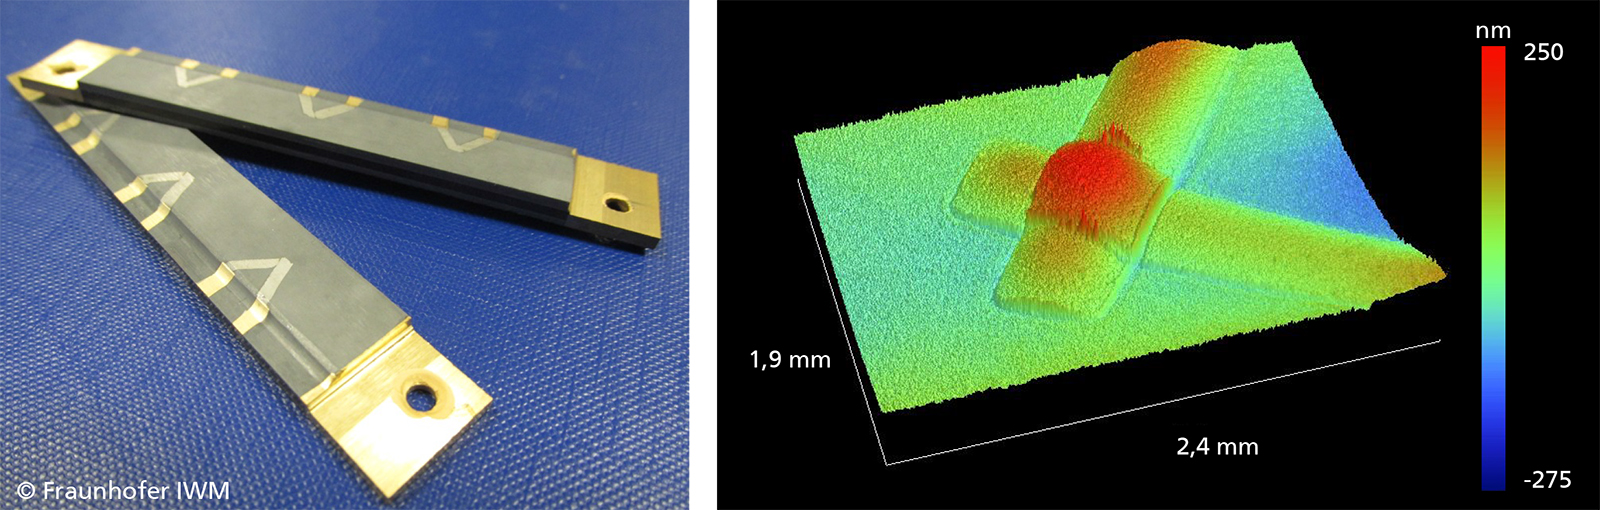 Mit Dünnschichtsensoren ausgestattete Siegelschienen (links). Weißlichtinterferometrische Aufnahme einer Messstelle mit Leiterbahnen von ca. 250 nm Dicke und ca. 600 µm Breite (rechts).